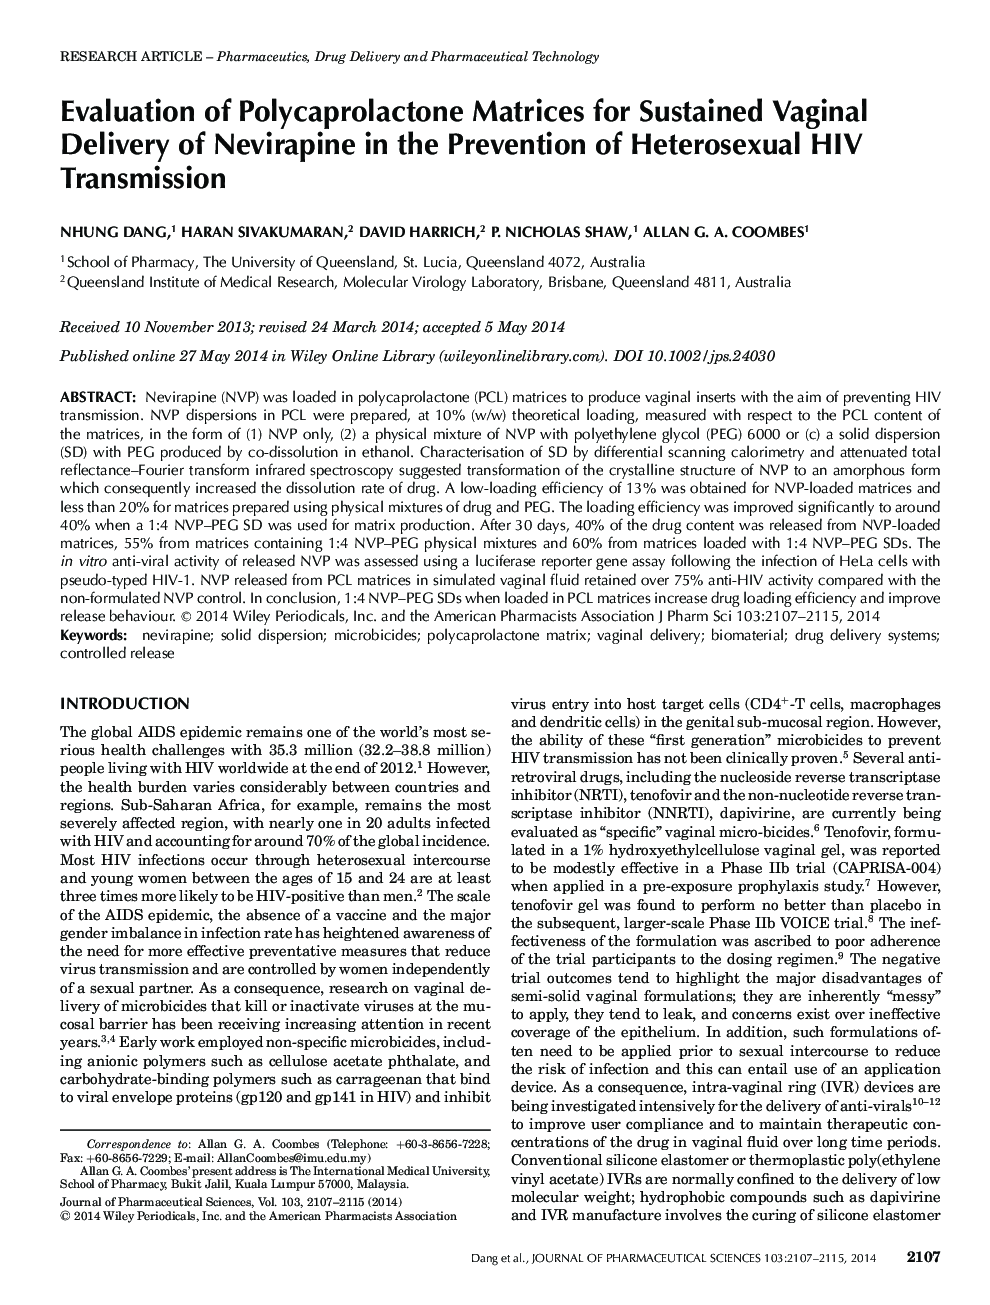 ارزیابی ماتریس های پلی کاپرولاکتون برای تحویل پایدار واژینال نویار پین در پیشگیری از انتقال هتروزیکس 